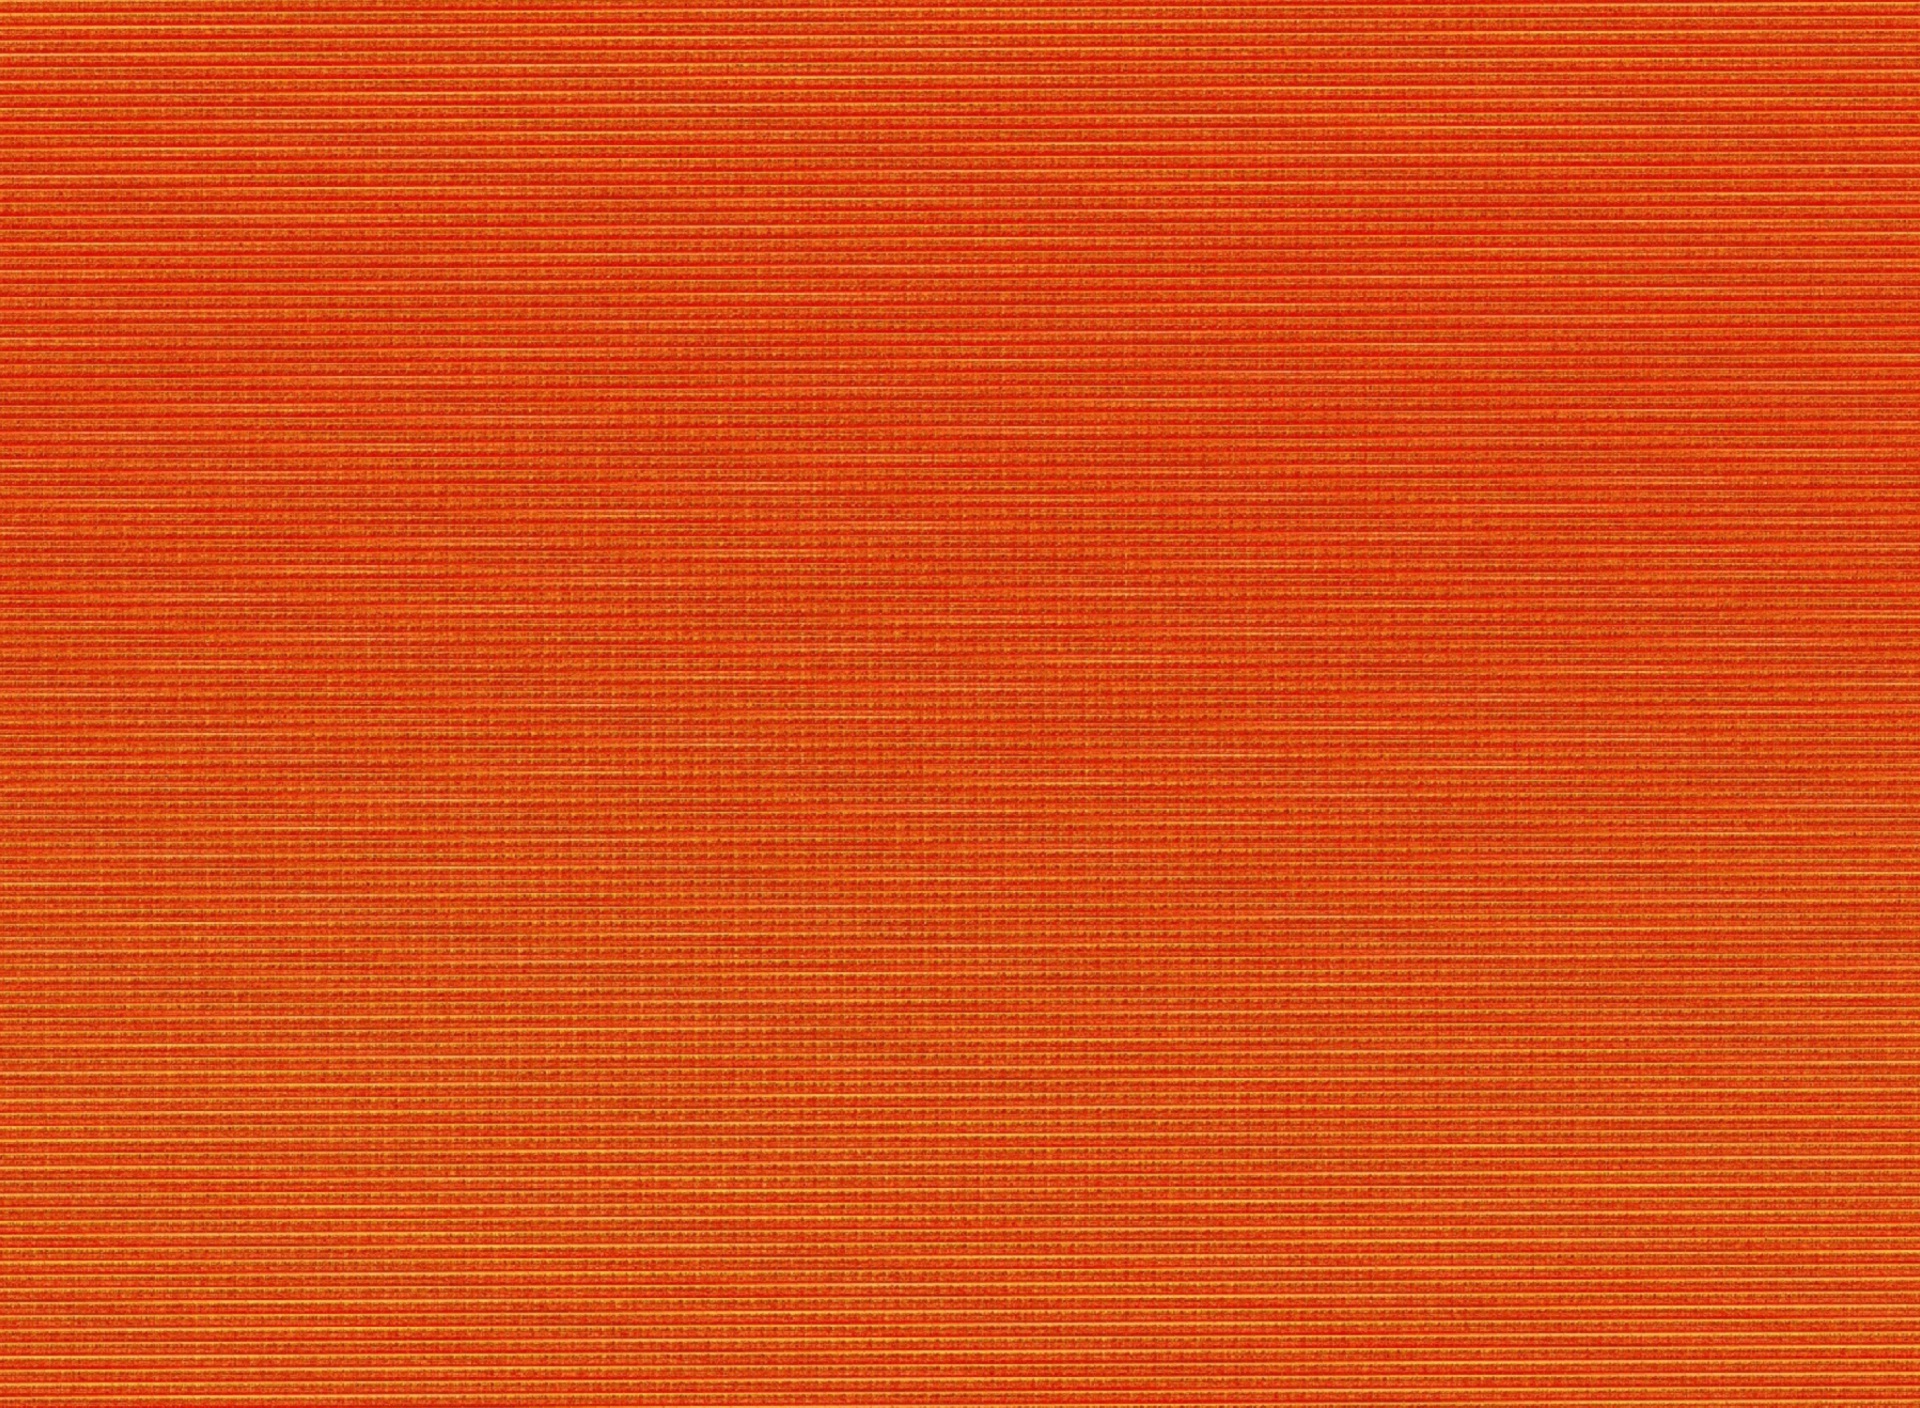 Das Orange texture Wallpaper 1920x1408